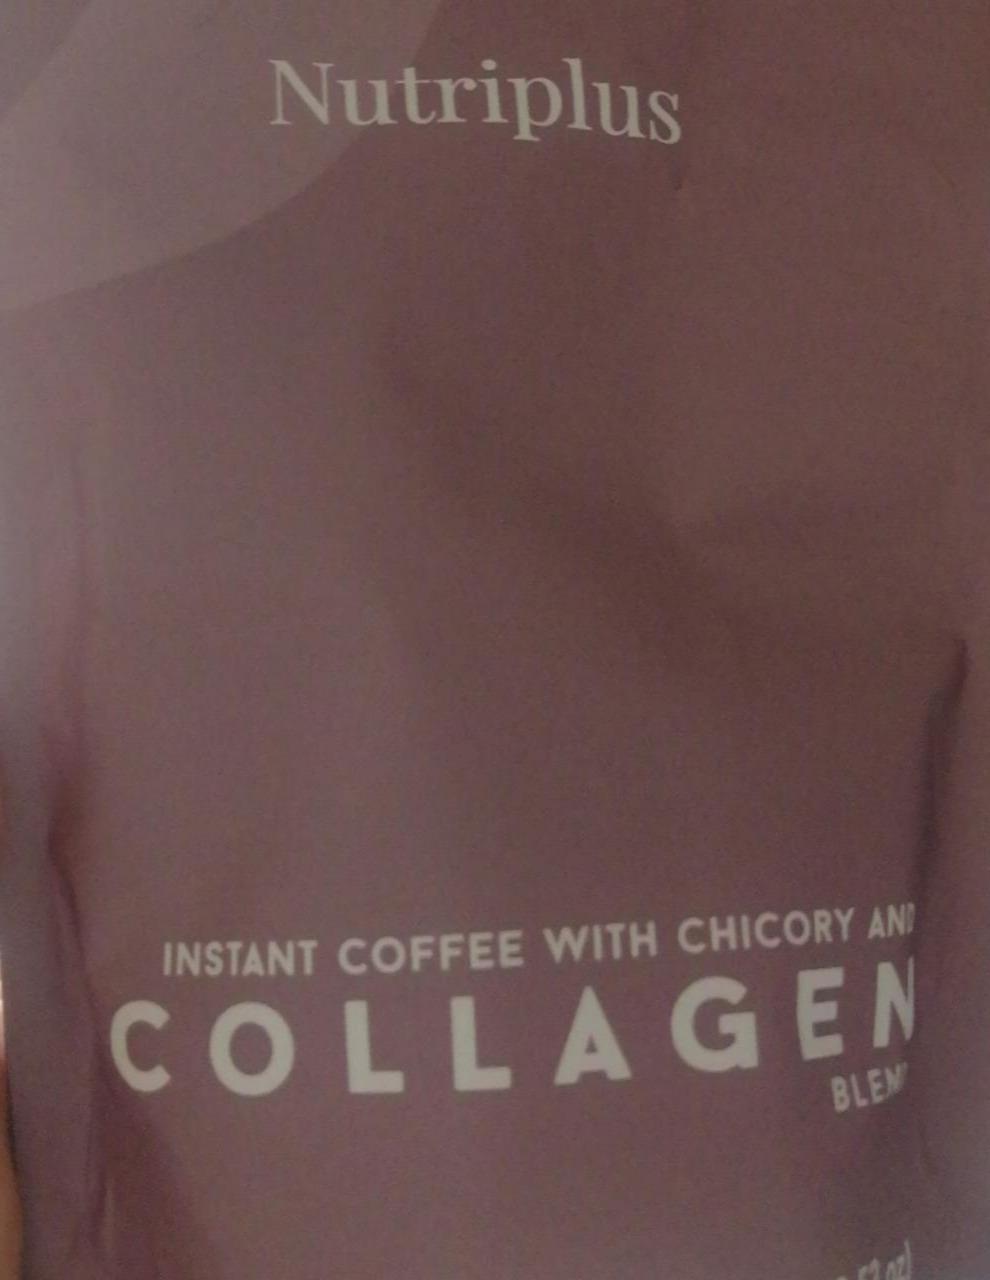 Fotografie - Collagen blend (instantní nápoj v prášku s cikorkou, instatní kávou a kolagenem Nutriplus